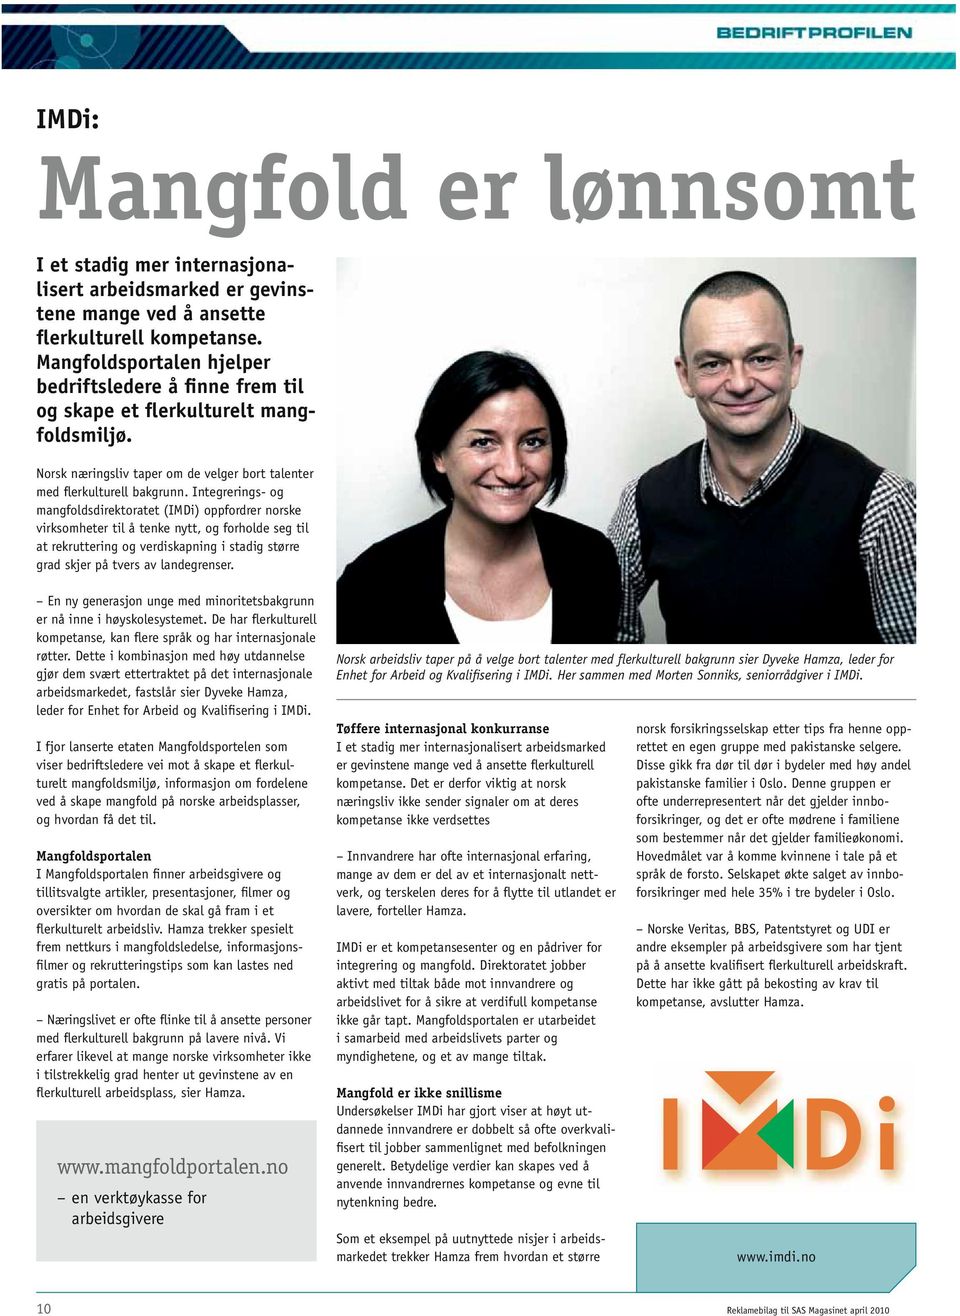 Integrerings- og mangfoldsdirektoratet (IMDi) oppfordrer norske virksomheter til å tenke nytt, og forholde seg til at rekruttering og verdiskapning i stadig større grad skjer på tvers av landegrenser.